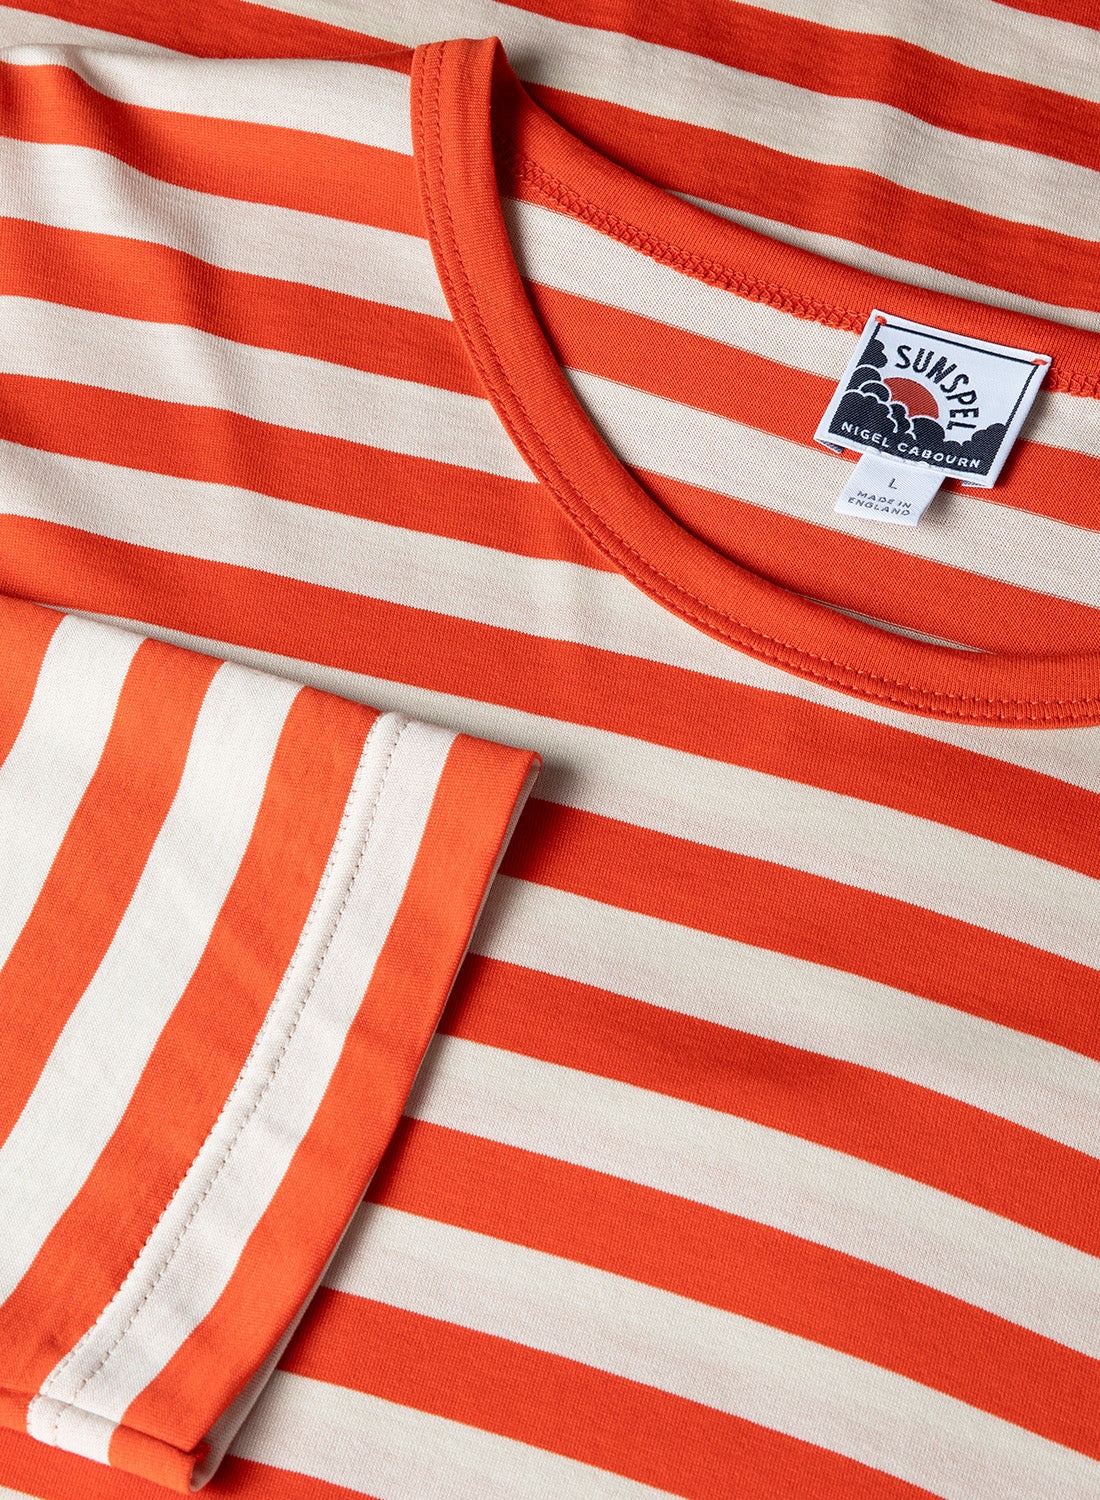 Nigel Cabourn x Sunspel Long Sleeve Pocket T-Shirt in Orange/Stone Stripe - 2